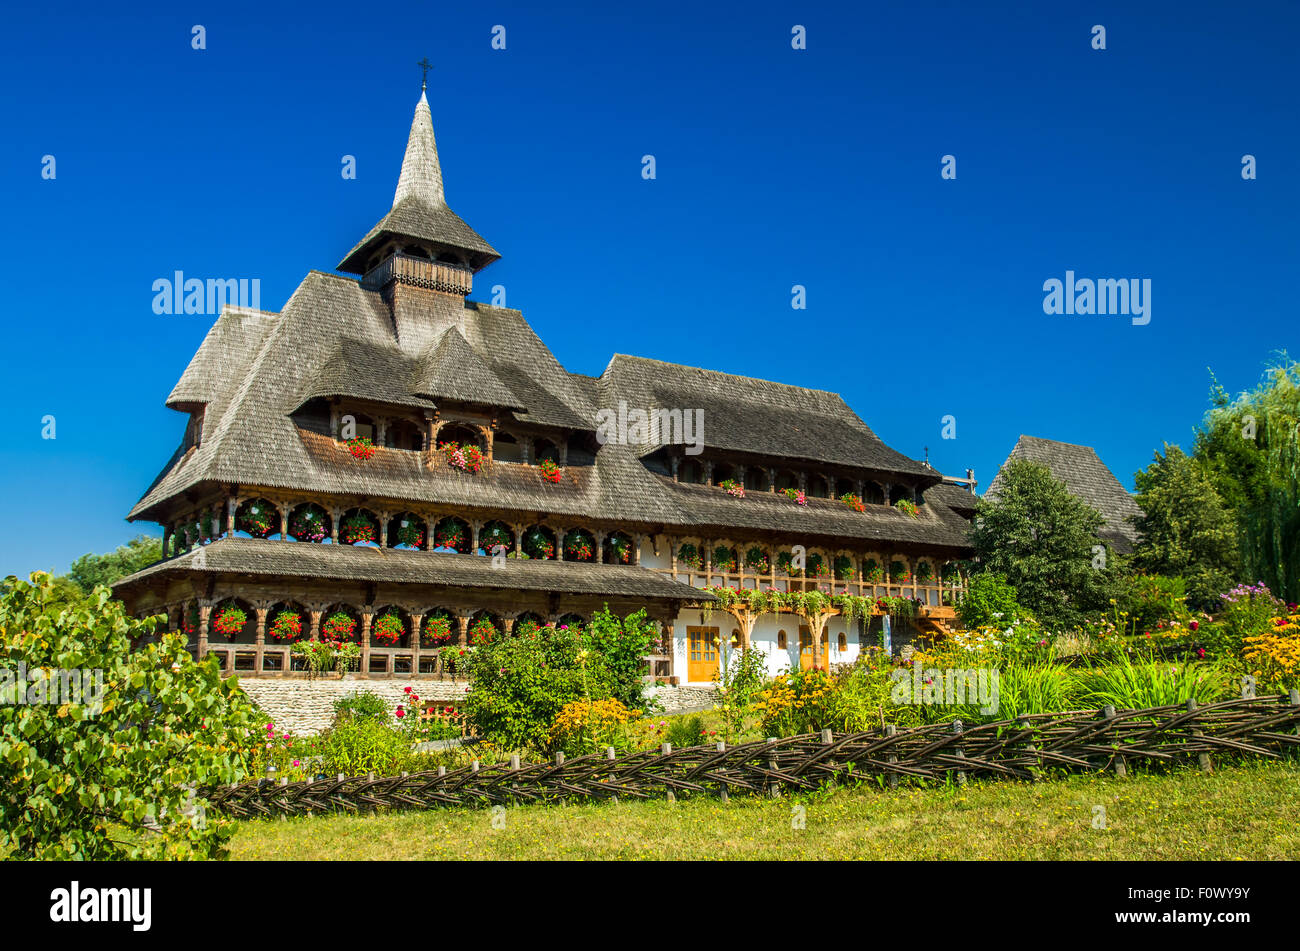 Barsana wooden monastery, Maramures, Romania. Birsana monastery is one of the main point of interest in Maramures county. Stock Photo